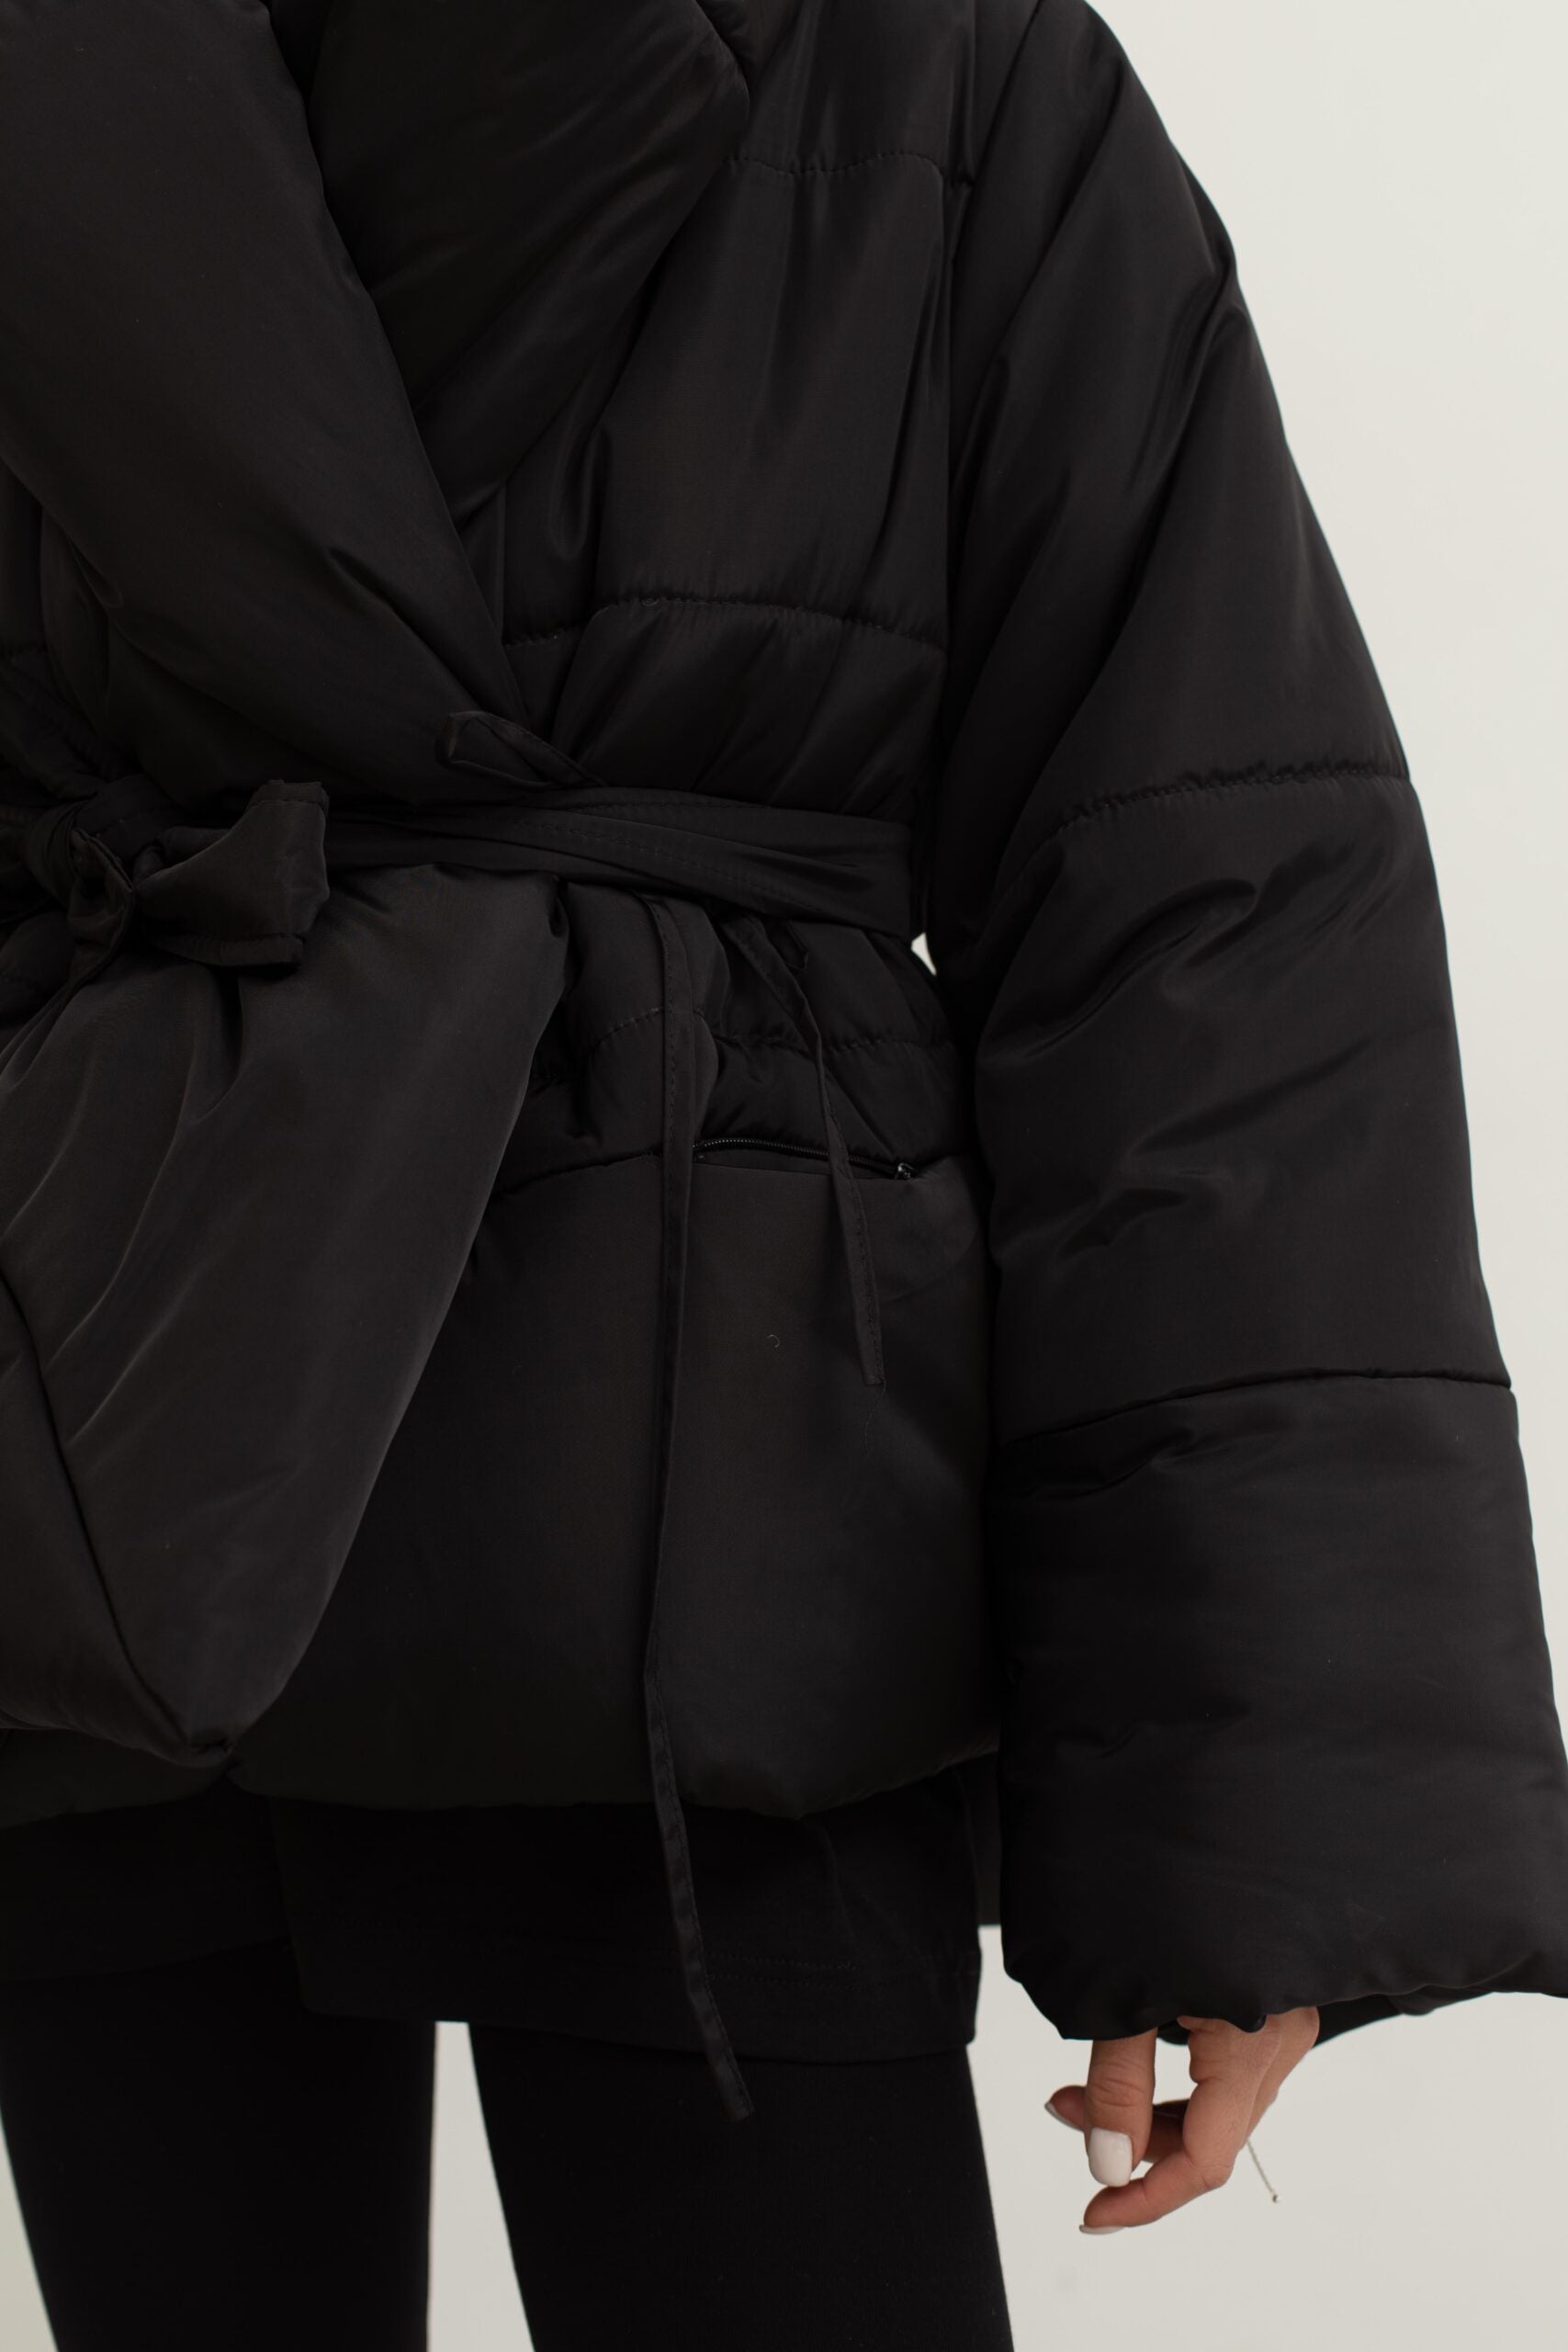 Kimono jacket in black color